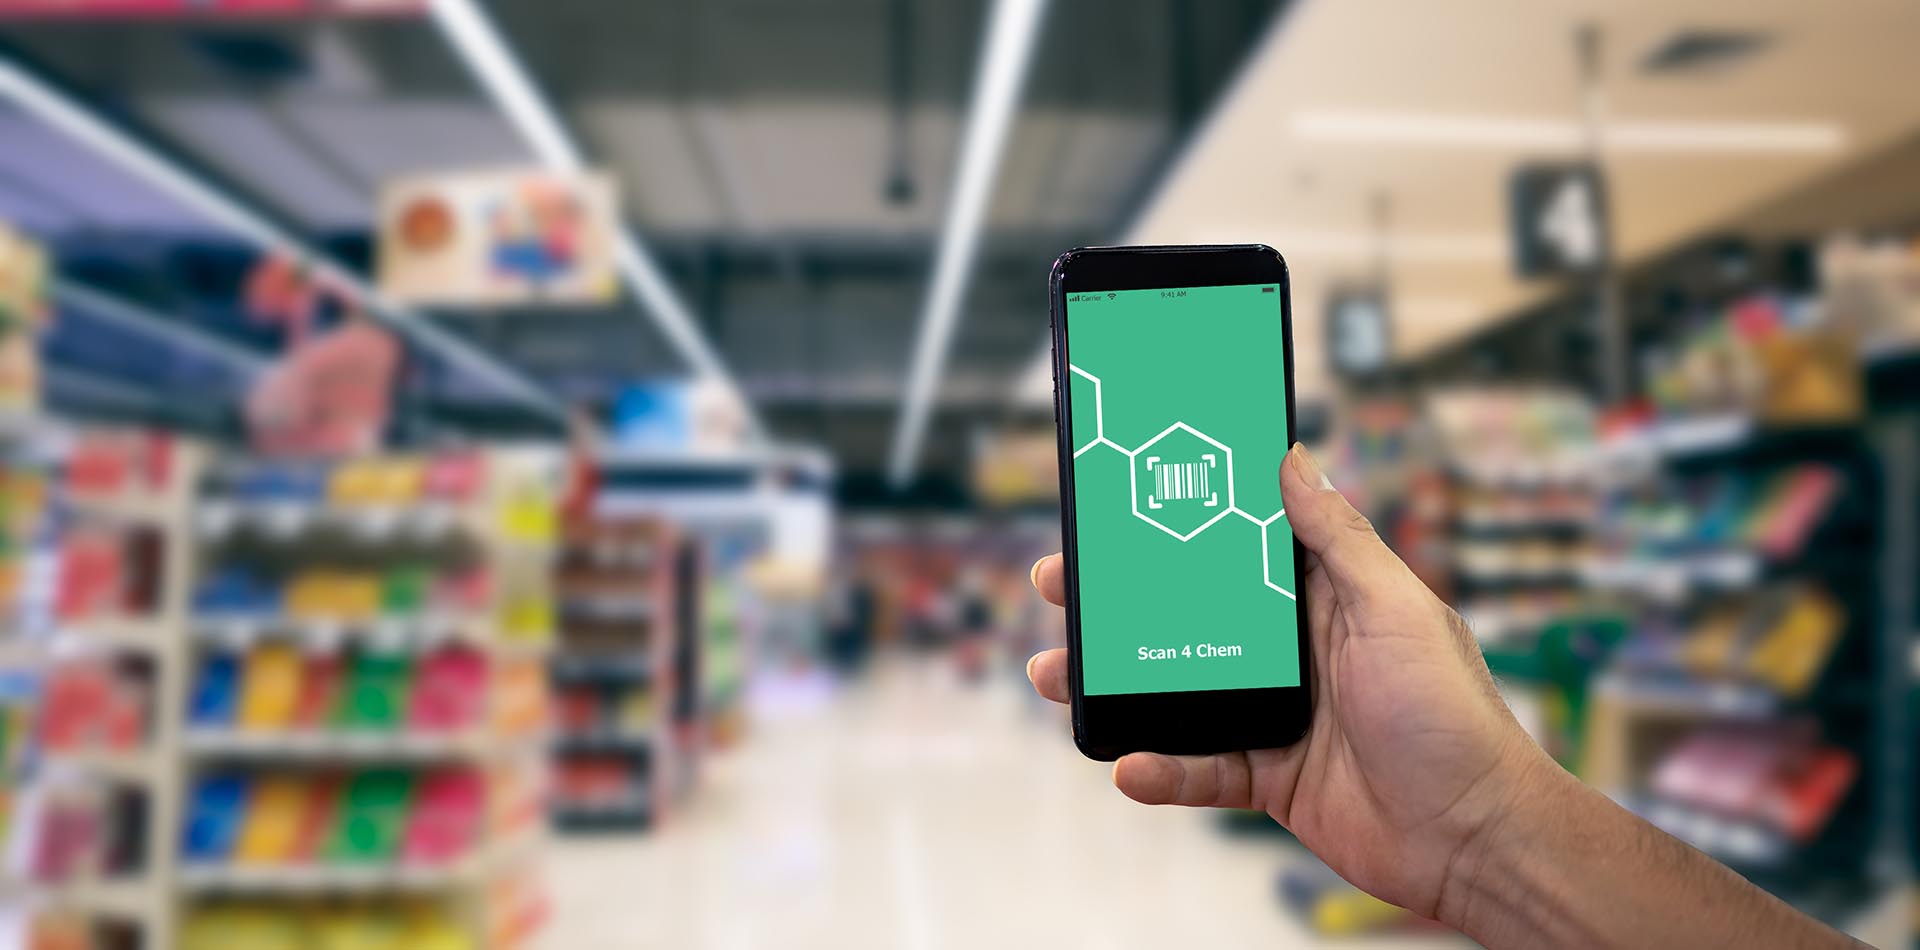 ein Mensch geht durch eine Kaufhalle und hat auf dem Handy die App 'Scan 4 Chem' geöffnet